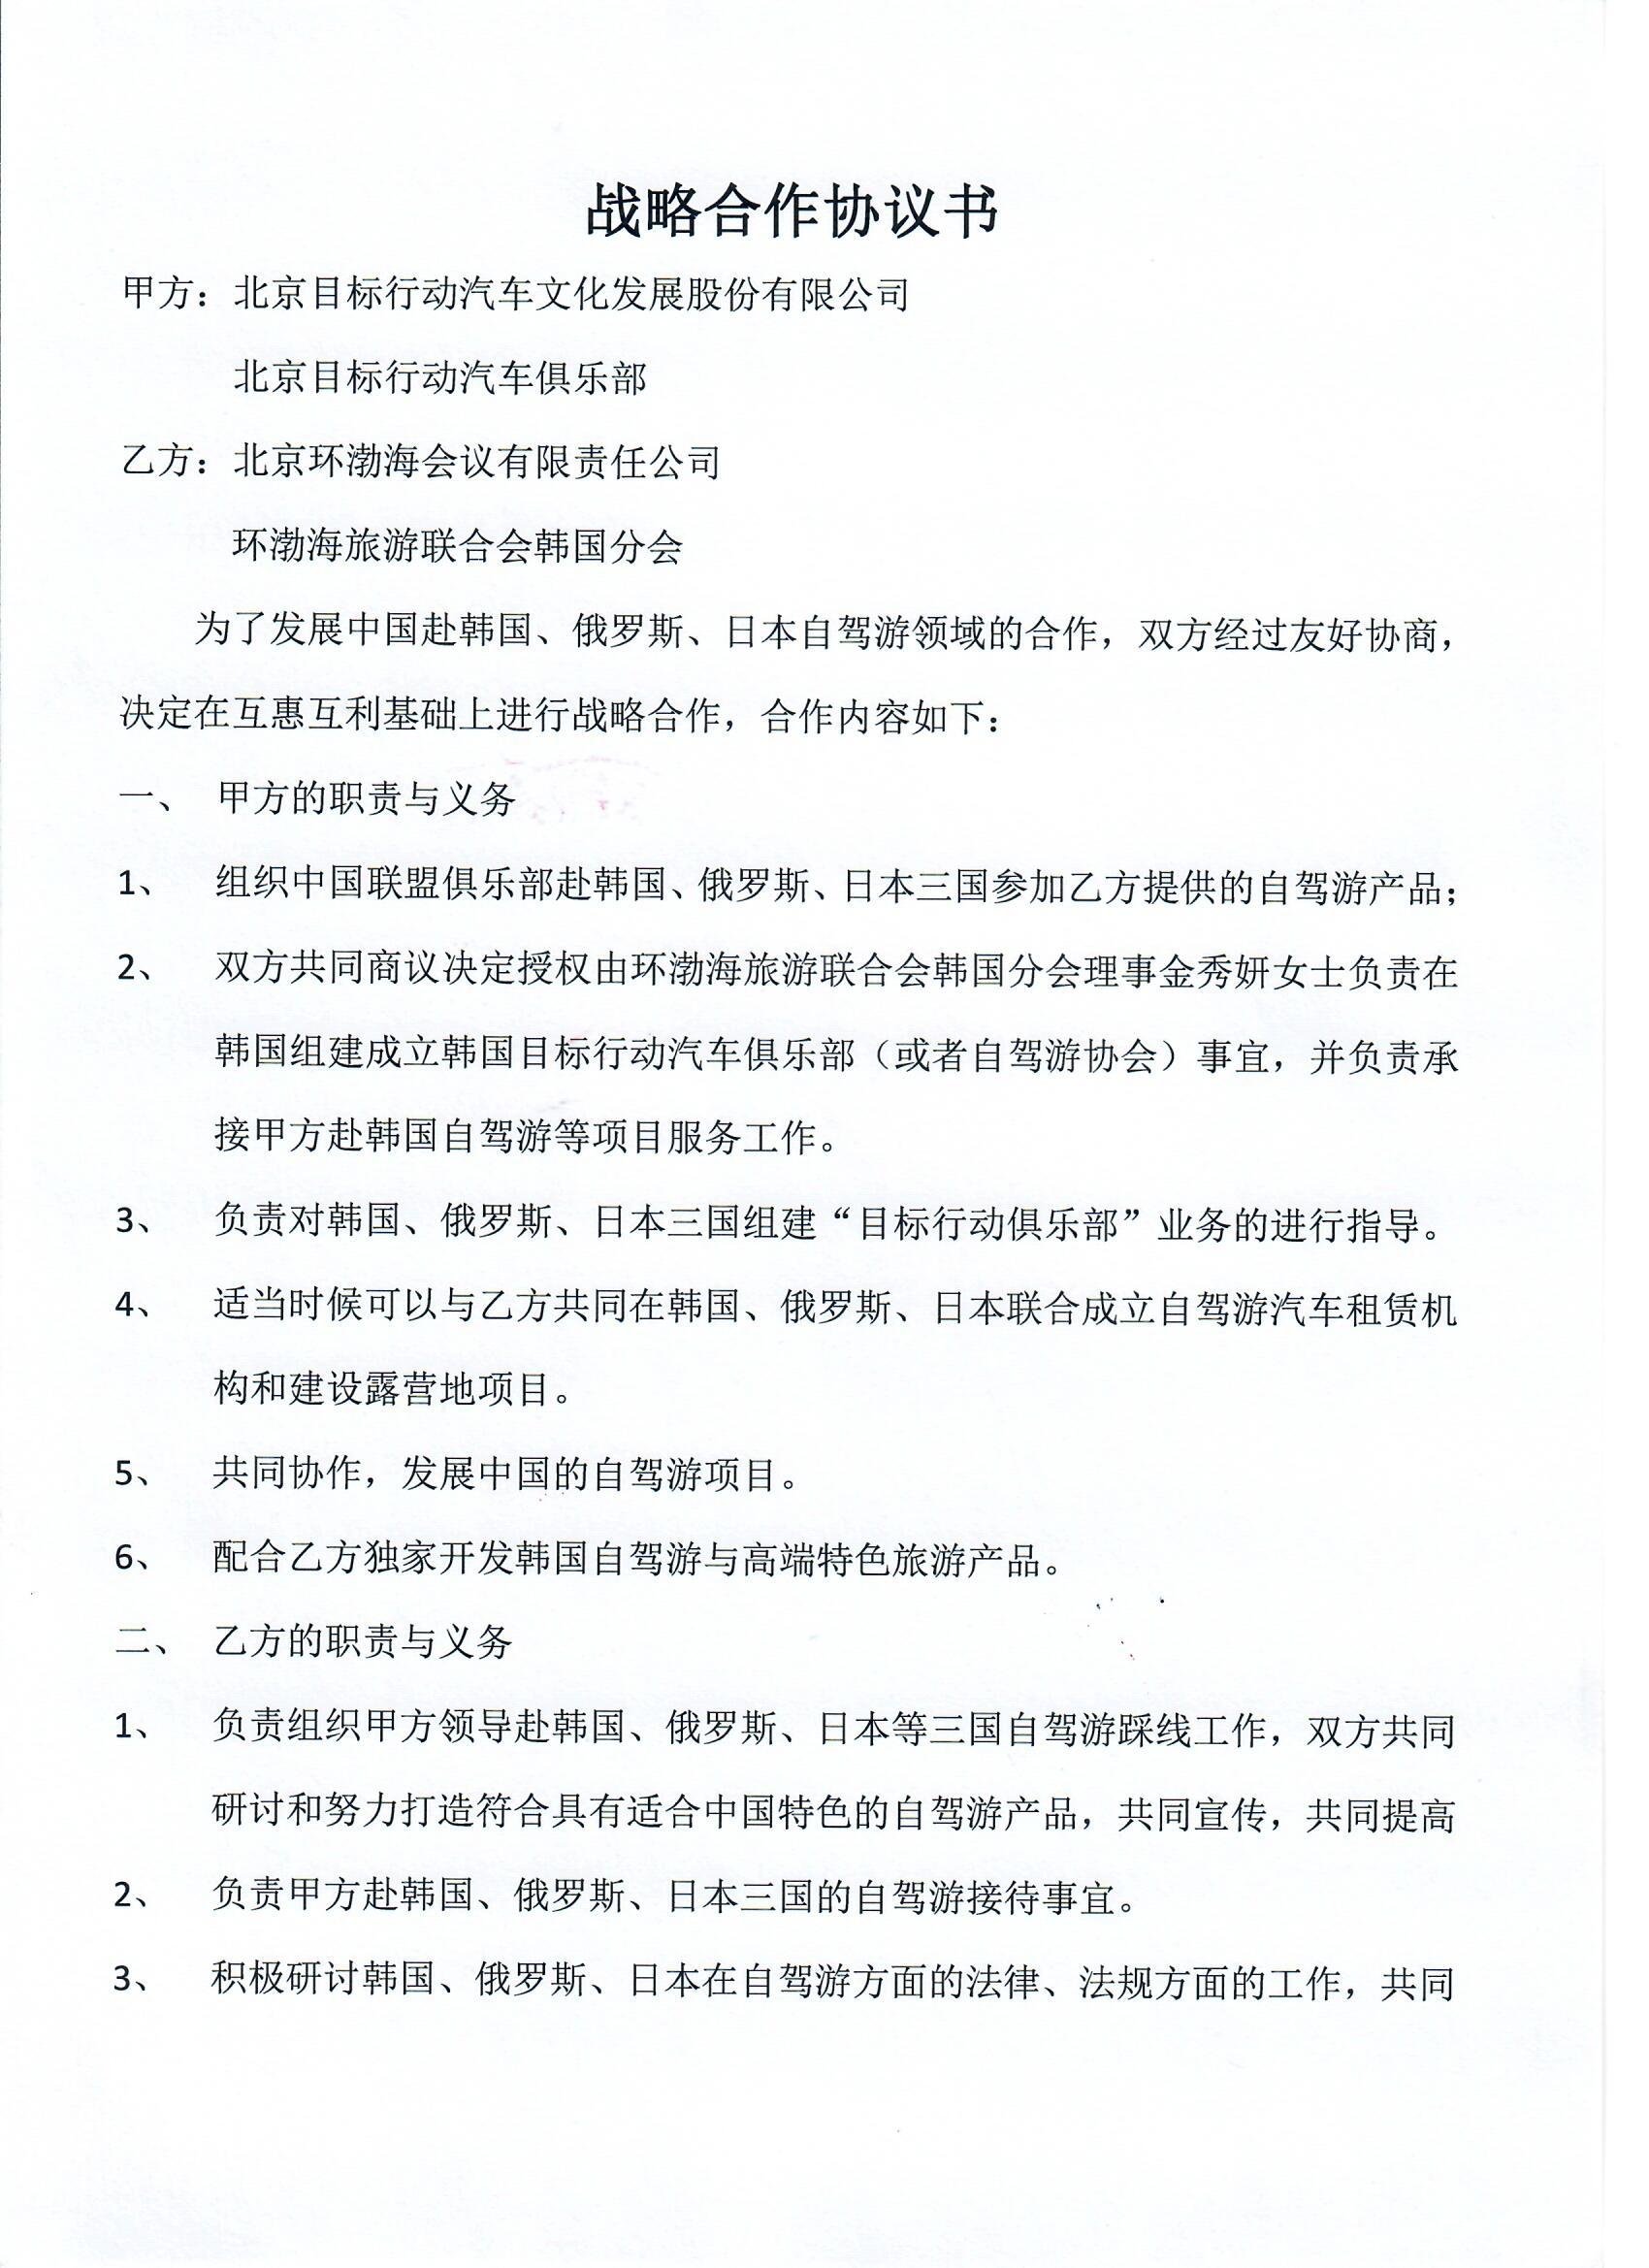 2-22北京目标行动汽车俱乐部协议1.jpg